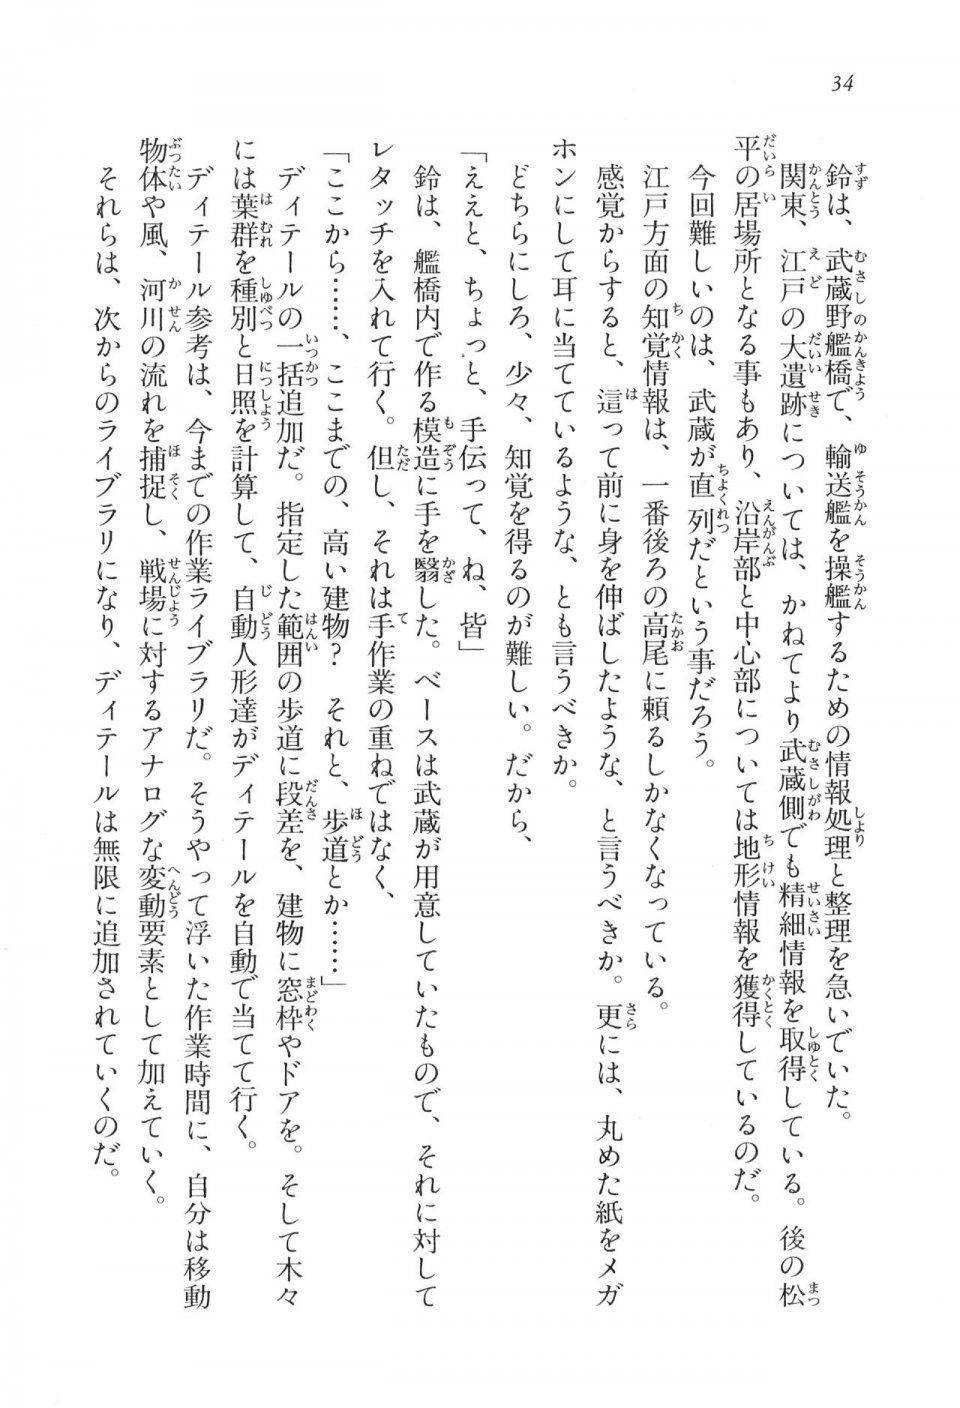 Kyoukai Senjou no Horizon LN Vol 17(7B) - Photo #34